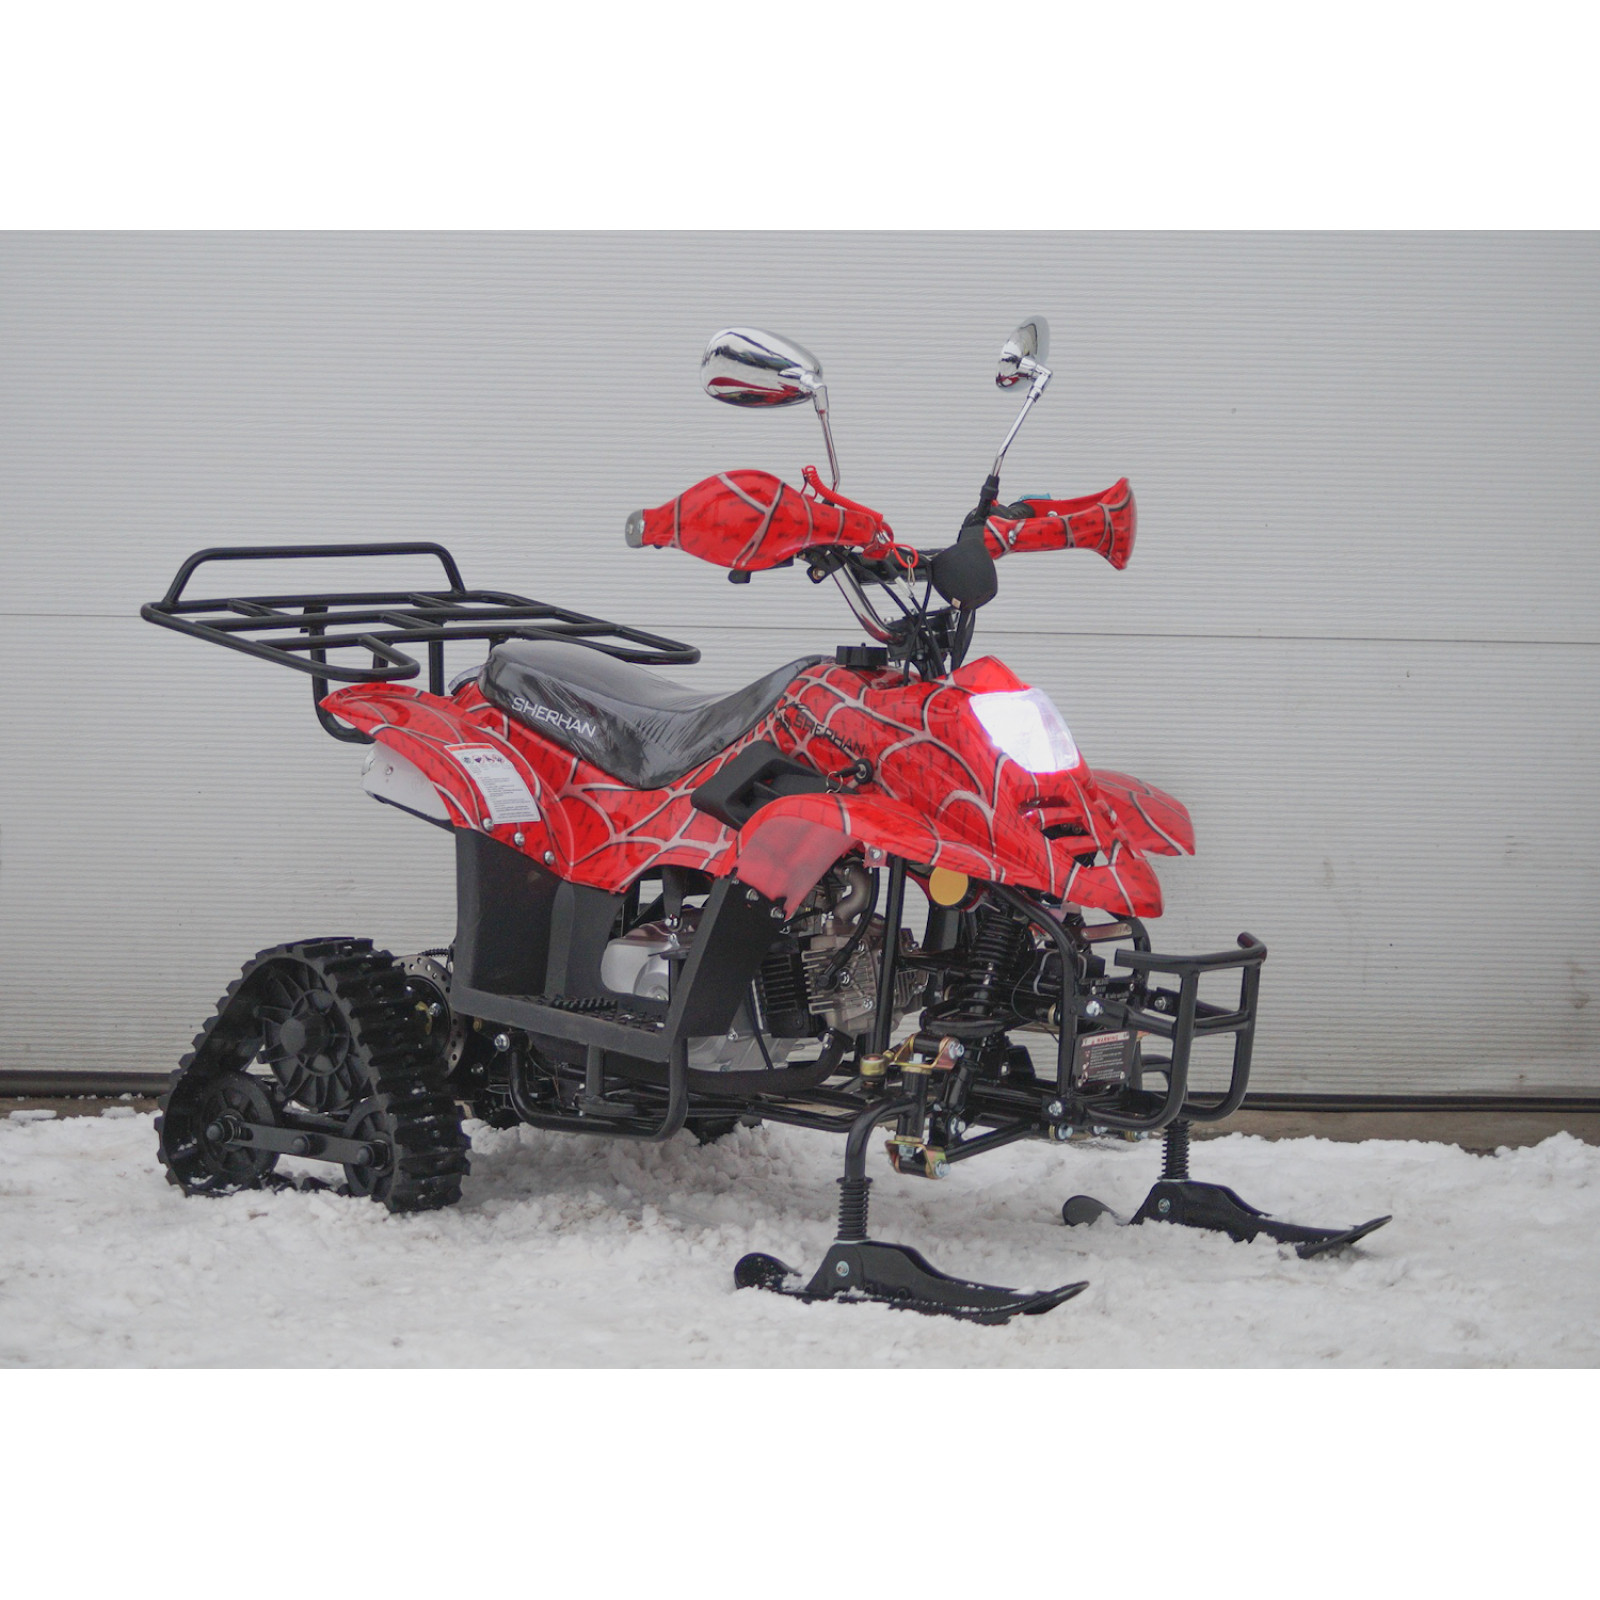 Снегоход-квадроцикл SHERHAN 500G SNOW (125cc)